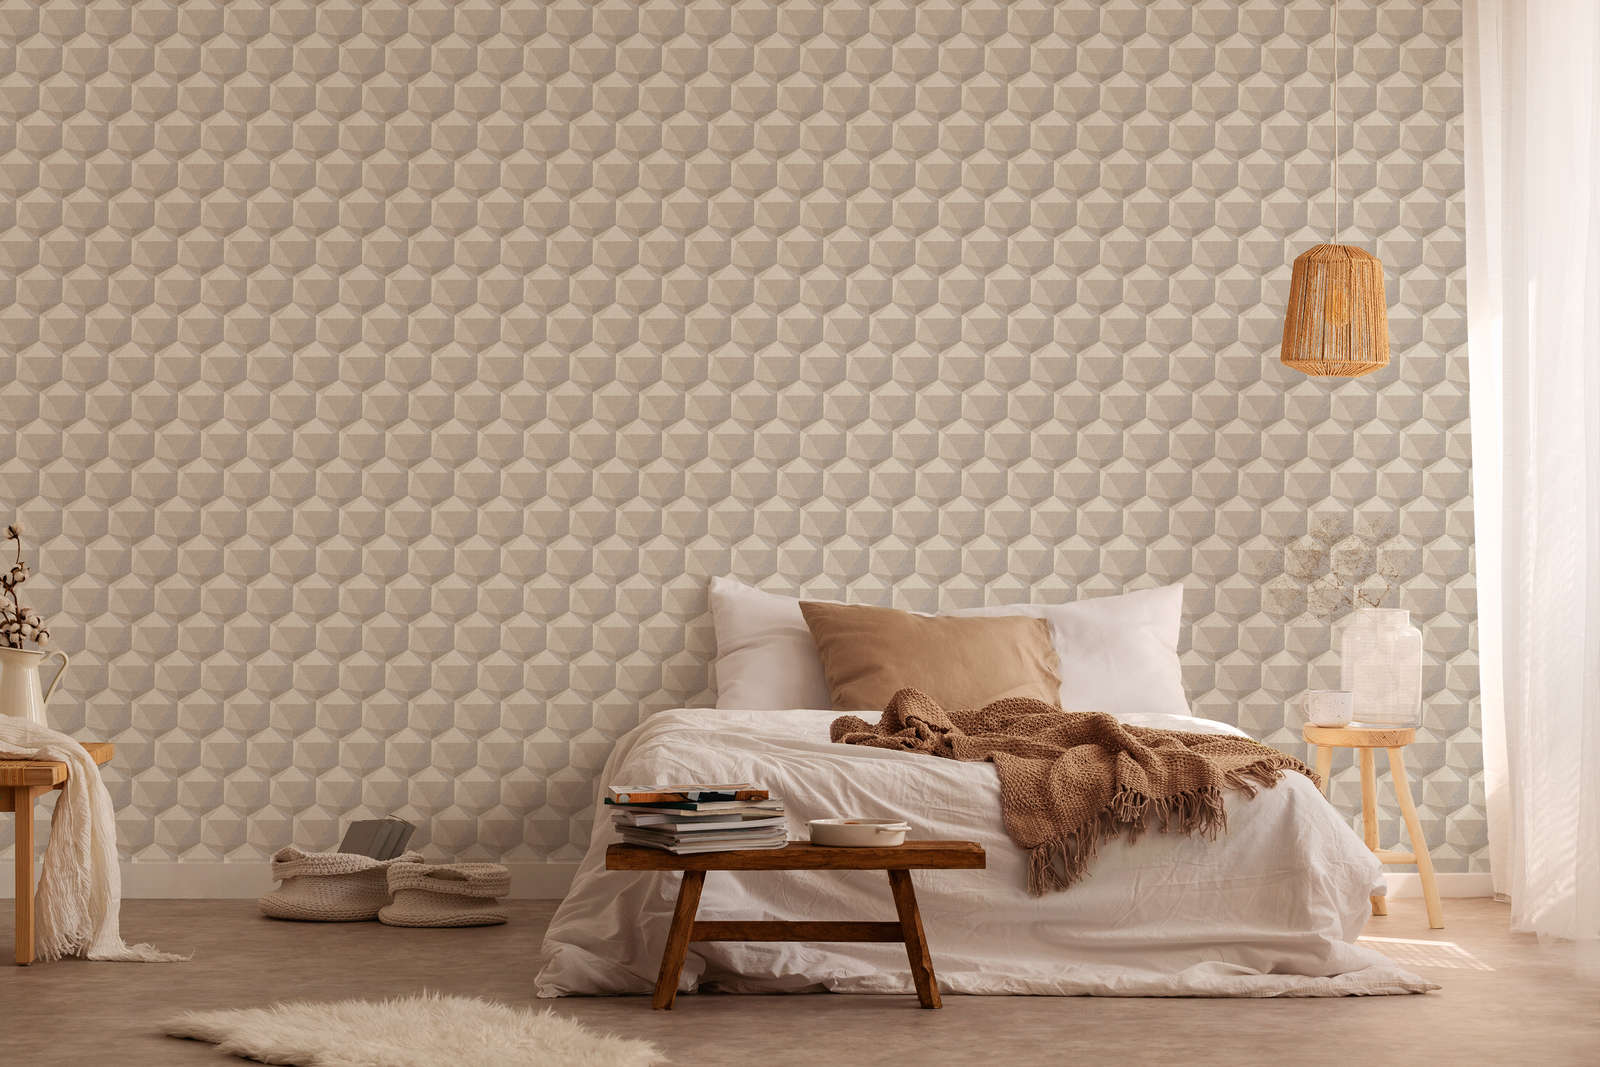             Patroonbehang met 3D design & linnenlook - beige, grijs
        